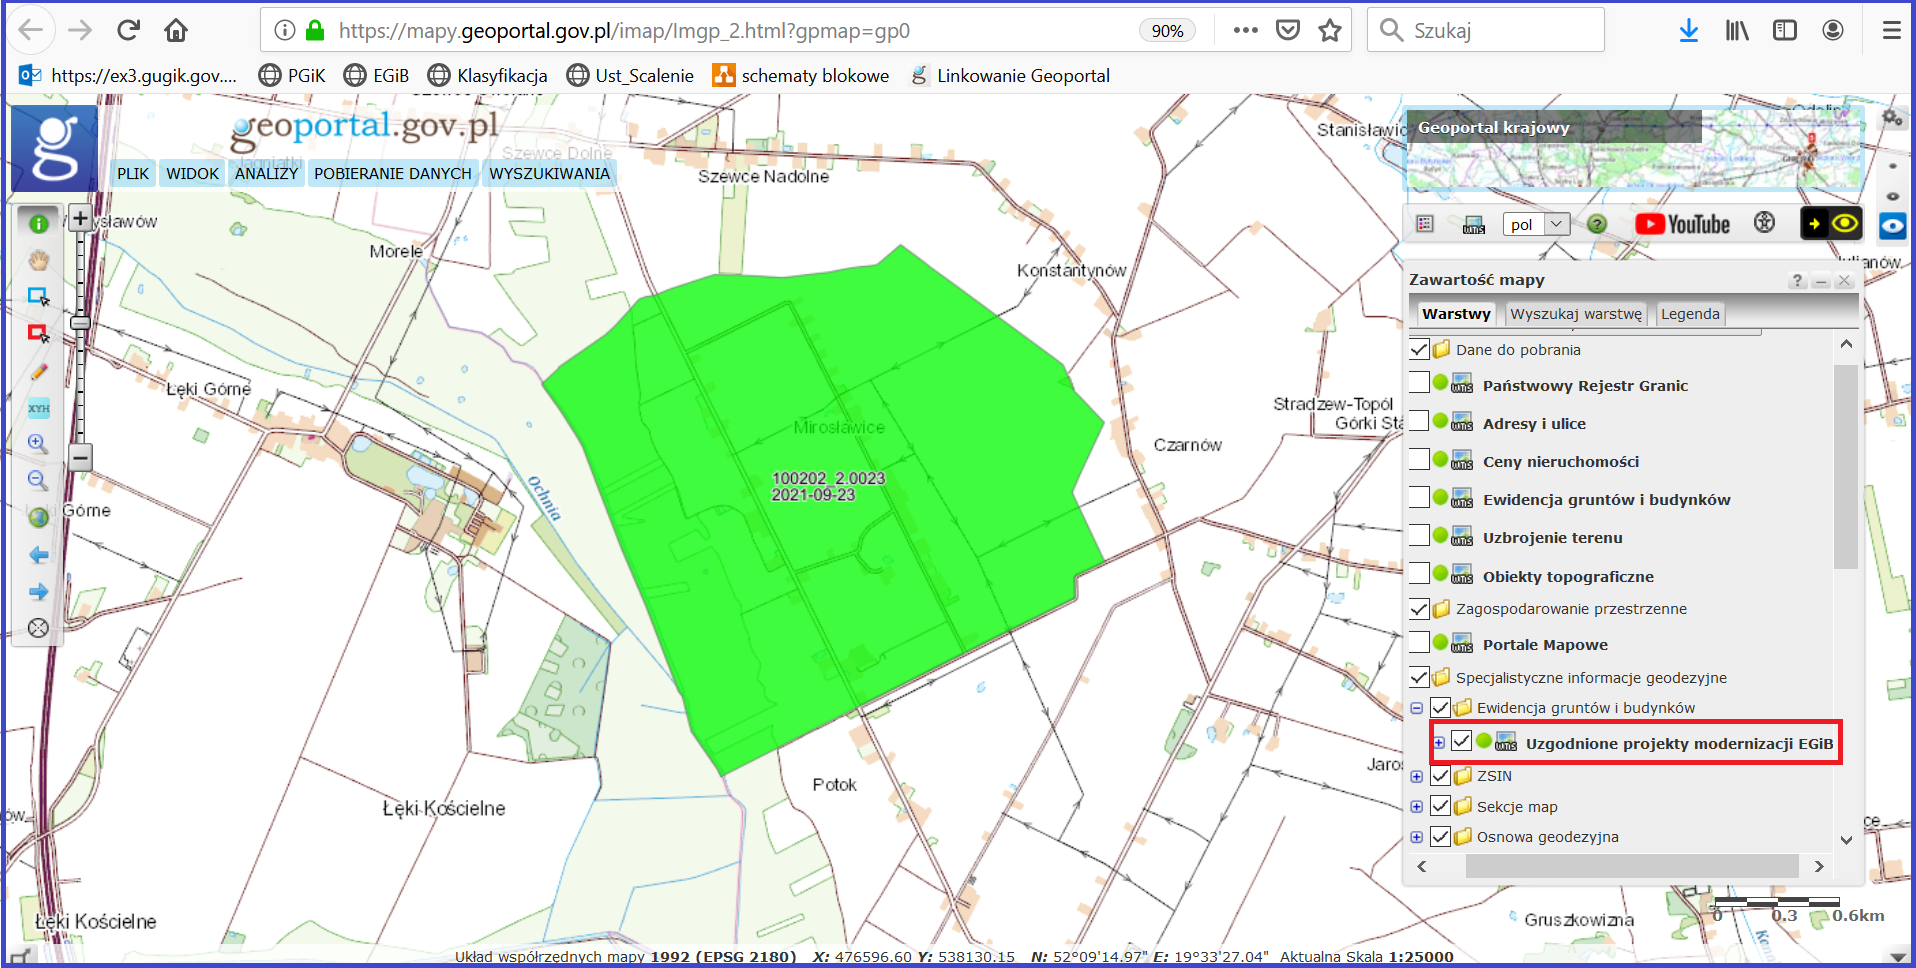 Ilustracja przedstawia zrzut ekranu z serwisu www.geoportal.gov.pl prezentujący warstwę „Uzgodnione projekty modernizacji EGiB” w powiększeniu przedstawiającym obszar obrębu, dla którego wydano opinię do przedstawionego projektu modernizacji egib. Na rysunku widać identyfikator tego obrębu oraz datę wydania opinii